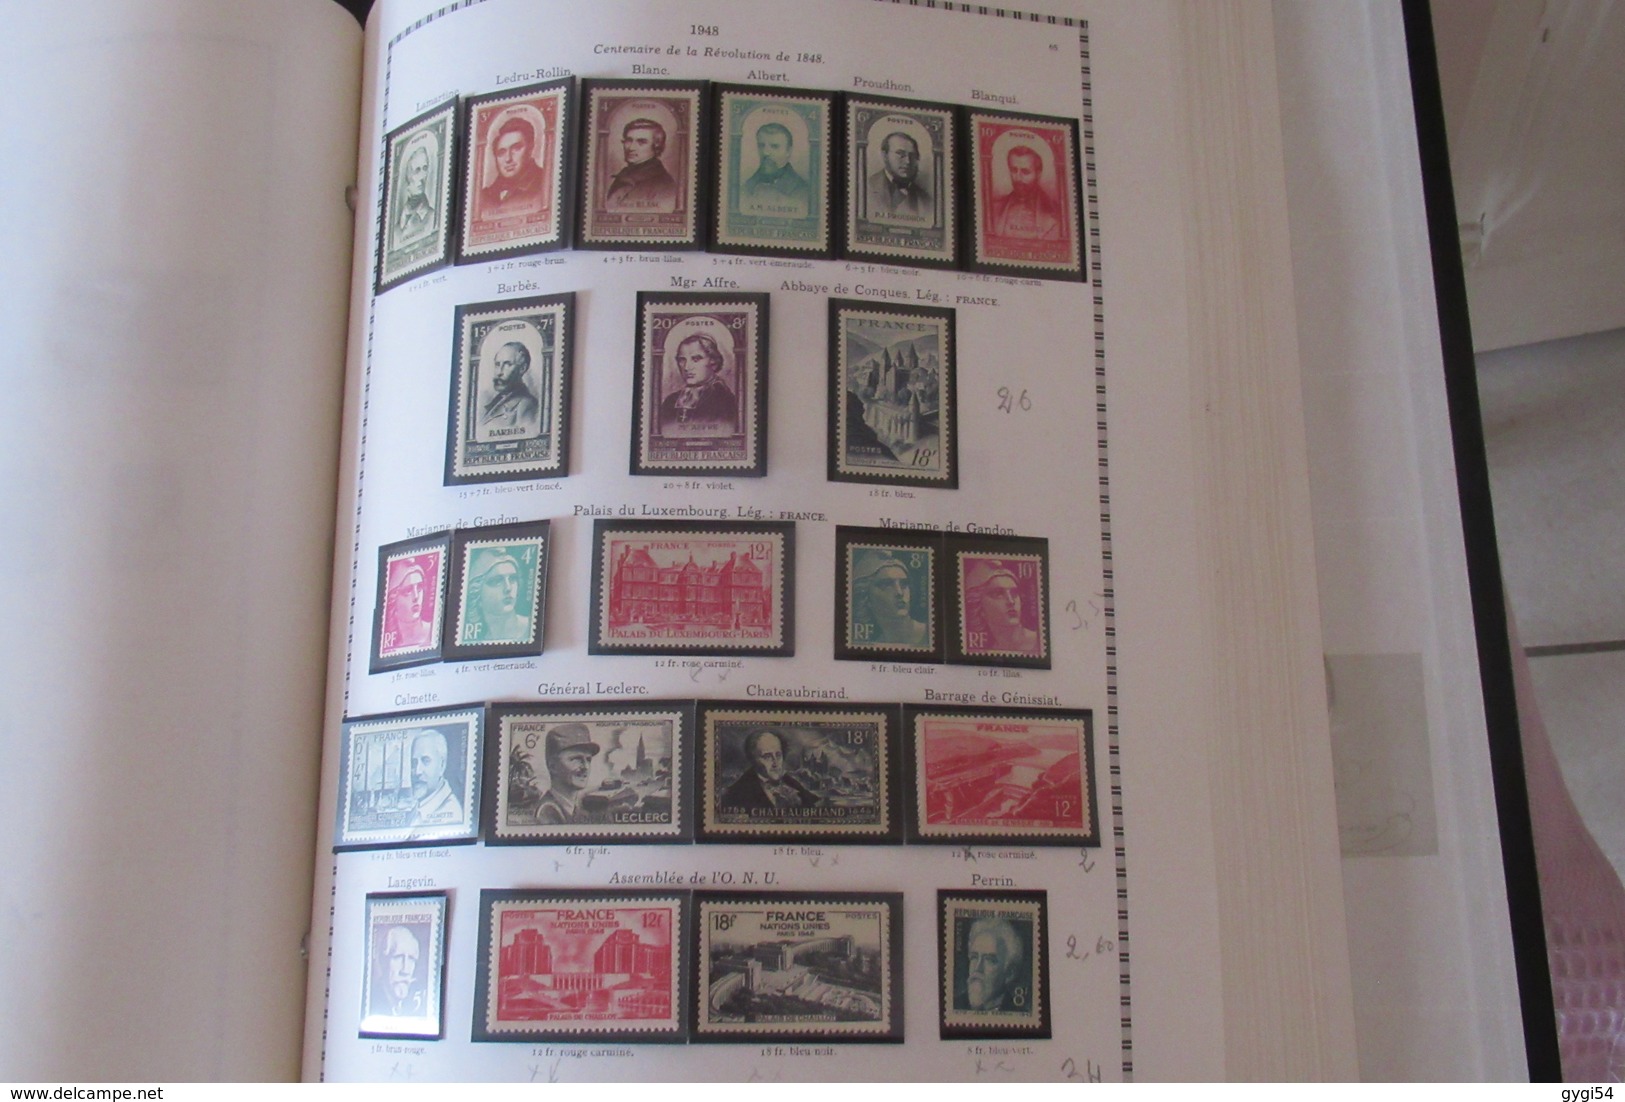 6 Albums yt  de 1849 à 1999 souvent avec pochettes quelques timbres